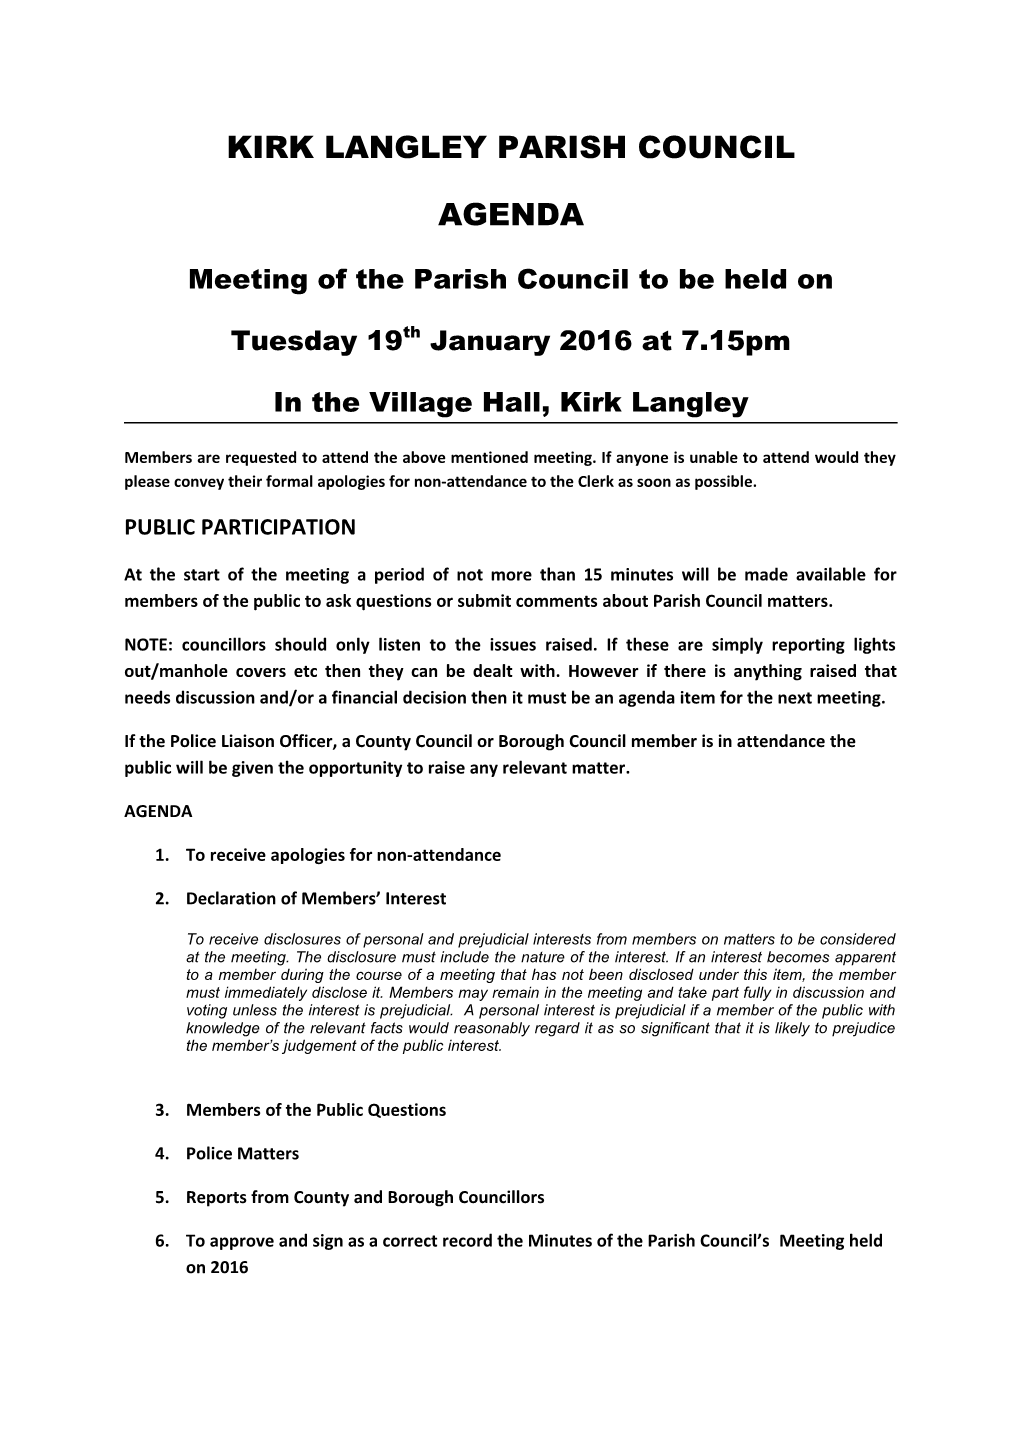 Kirk Langley Parish Council